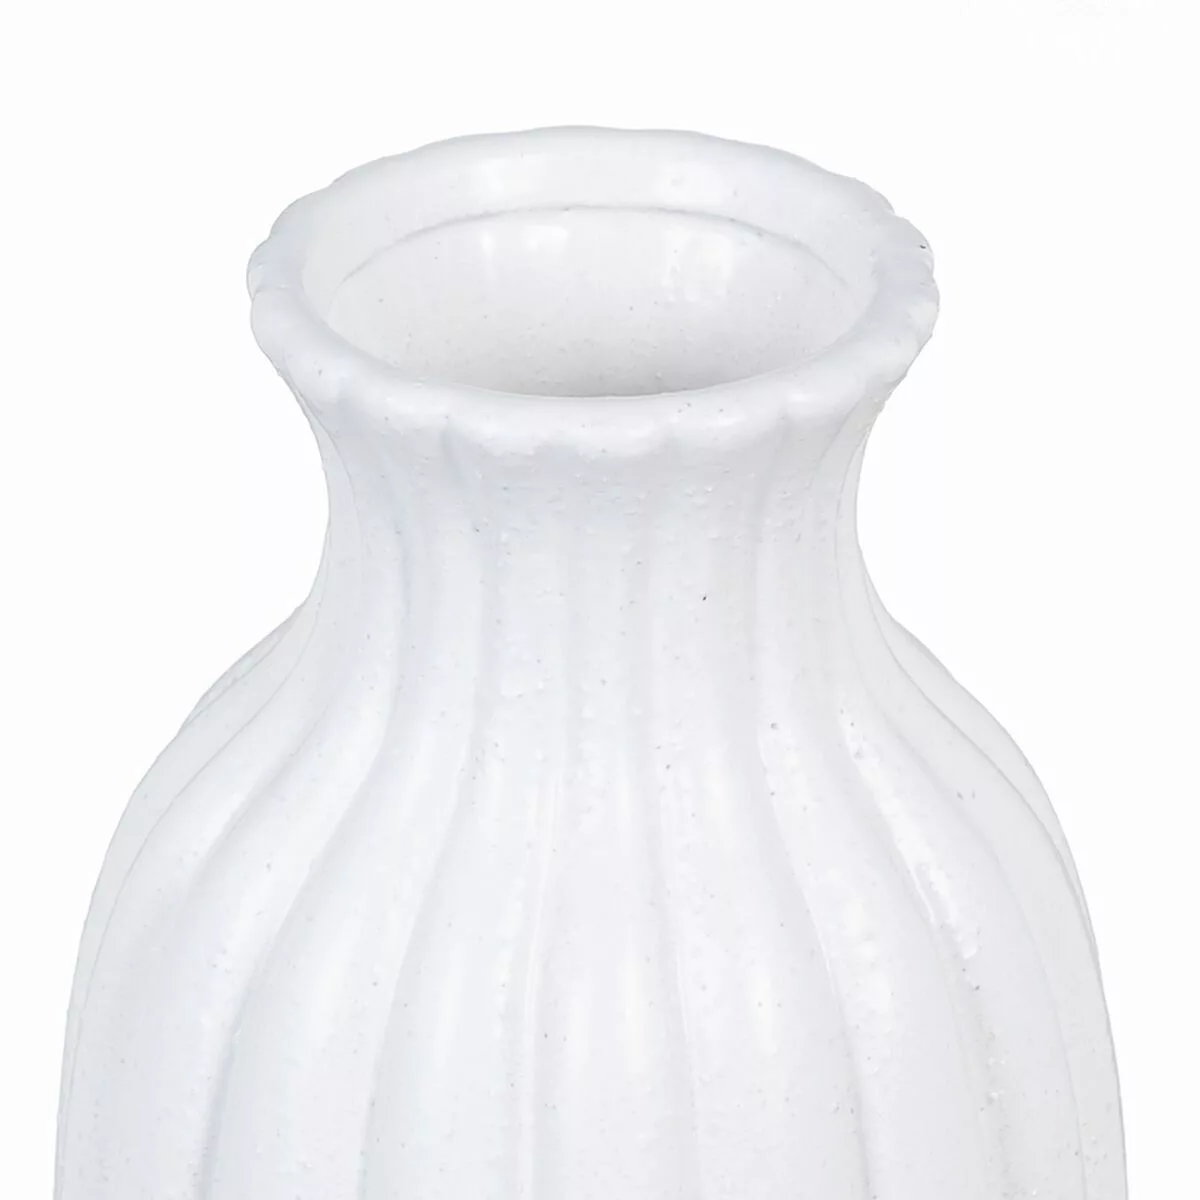 Vase 16,5 X 16,5 X 32 Cm Aus Keramik Weiß günstig online kaufen